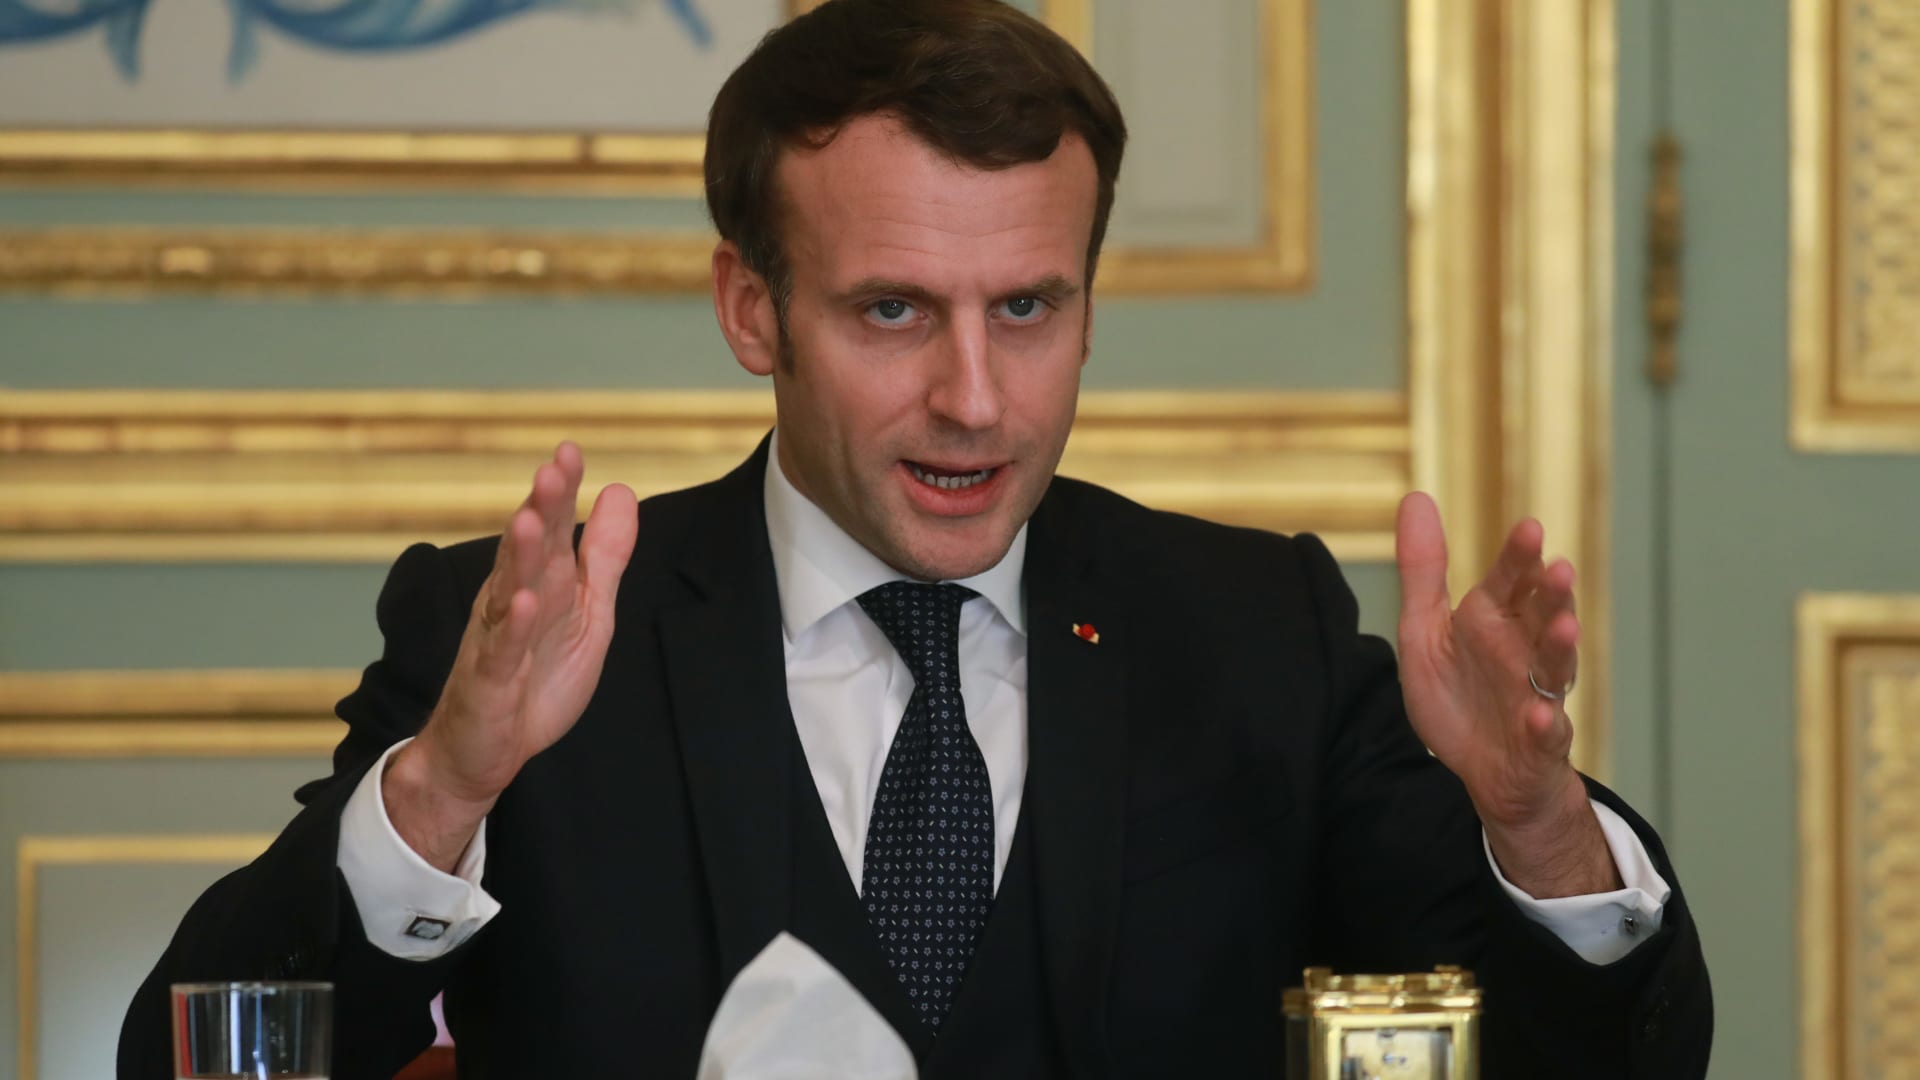 الرئيس الفرنسي يطلق عملية عسكرية بشعار "الصمود" لمواجهة كورونا